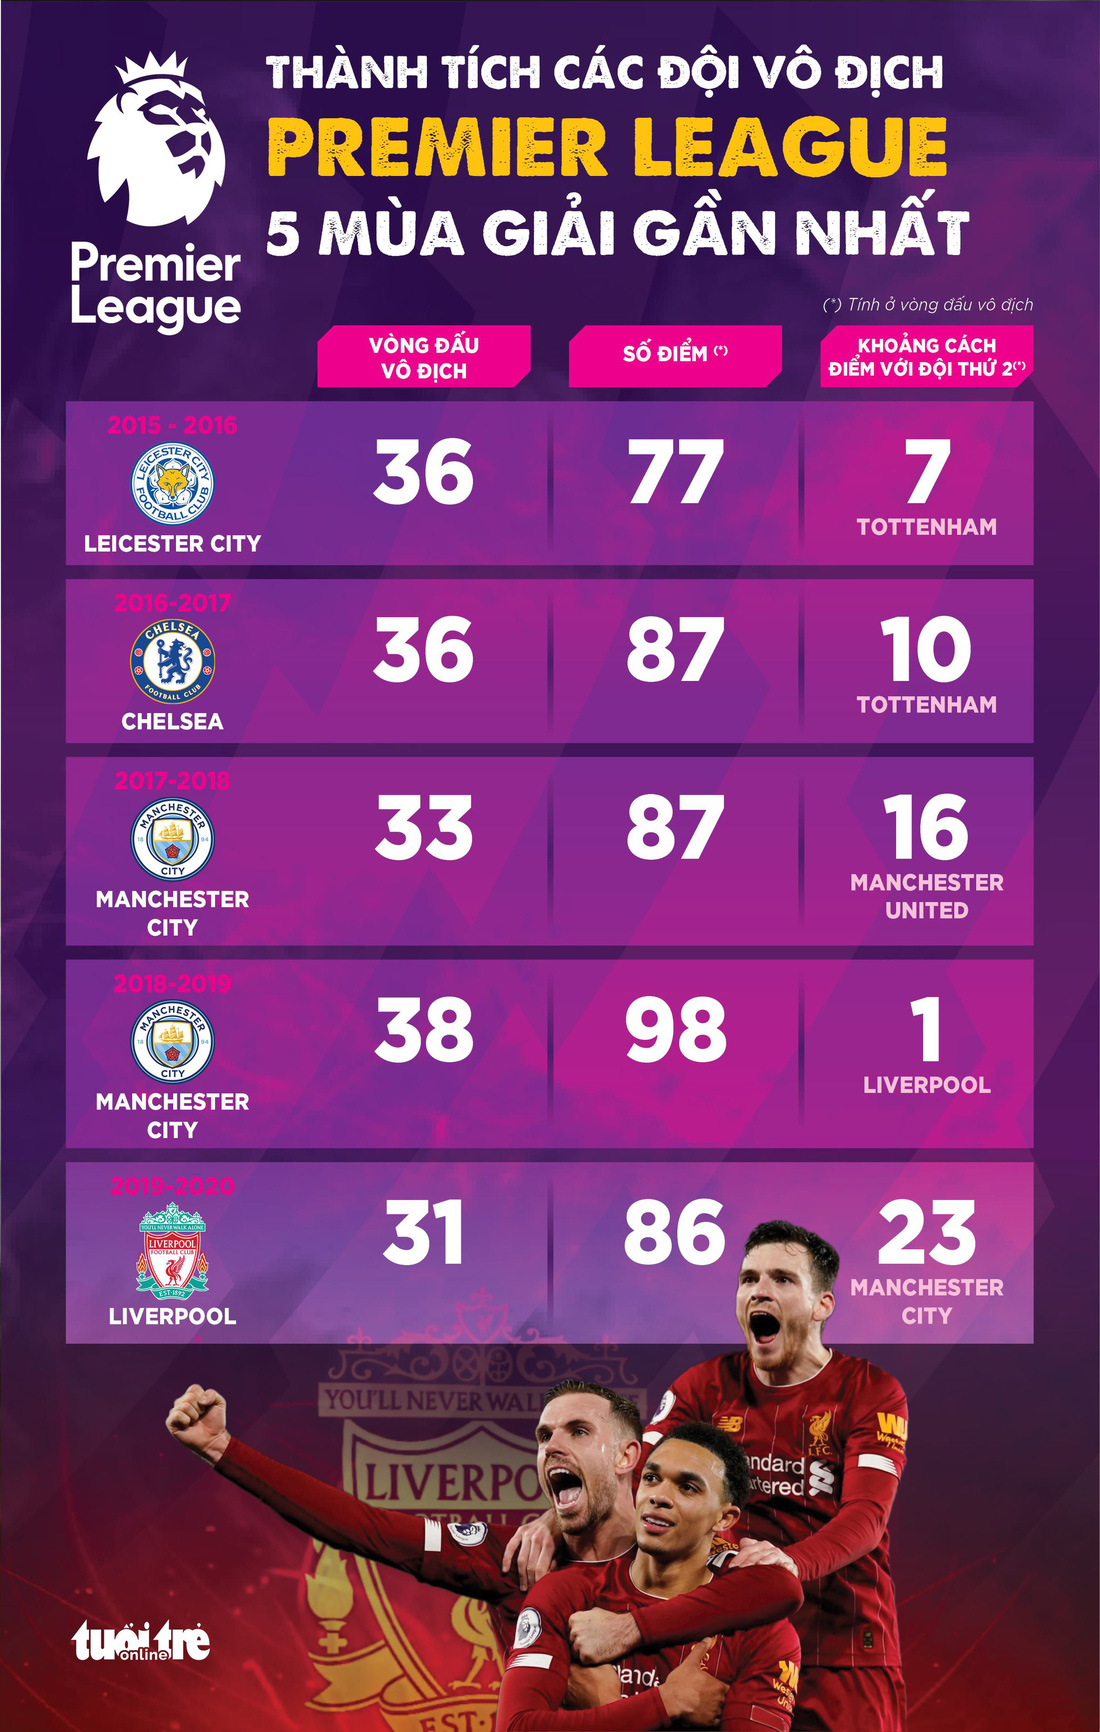 Đồ họa: Liverpool vượt trội nhất trong các nhà vô địch Premier League 5 mùa gần nhất - Ảnh 1.